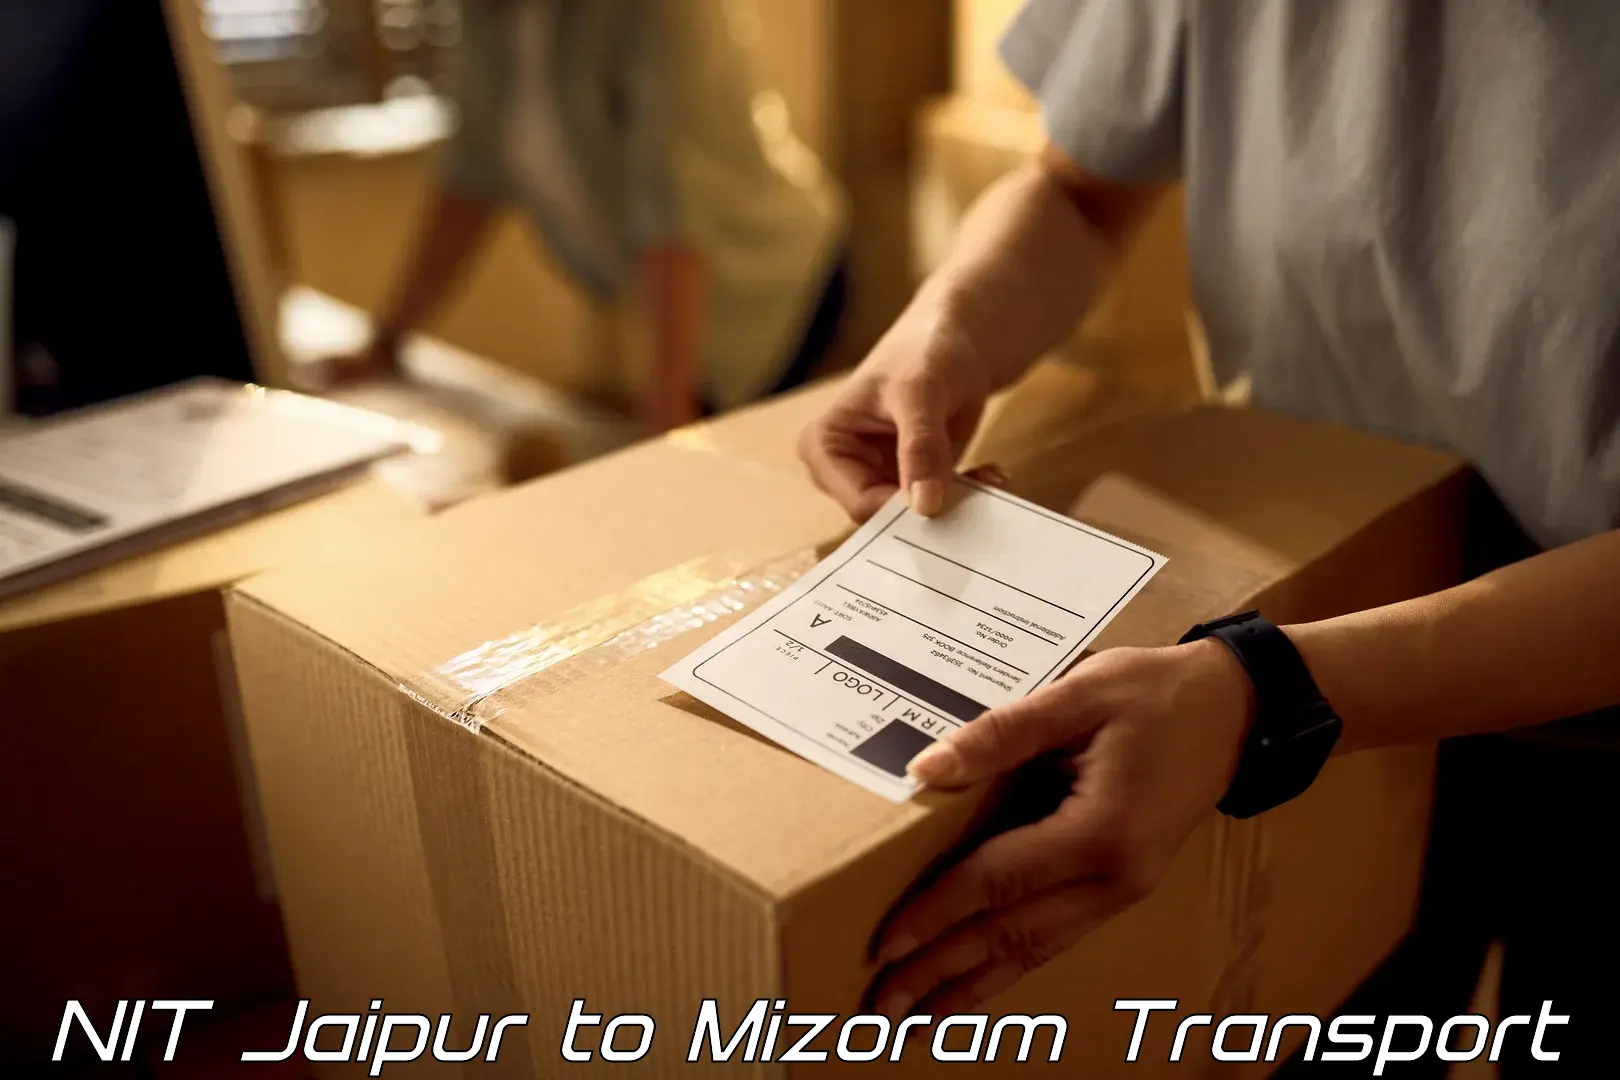 Furniture transport service NIT Jaipur to Thenzawl